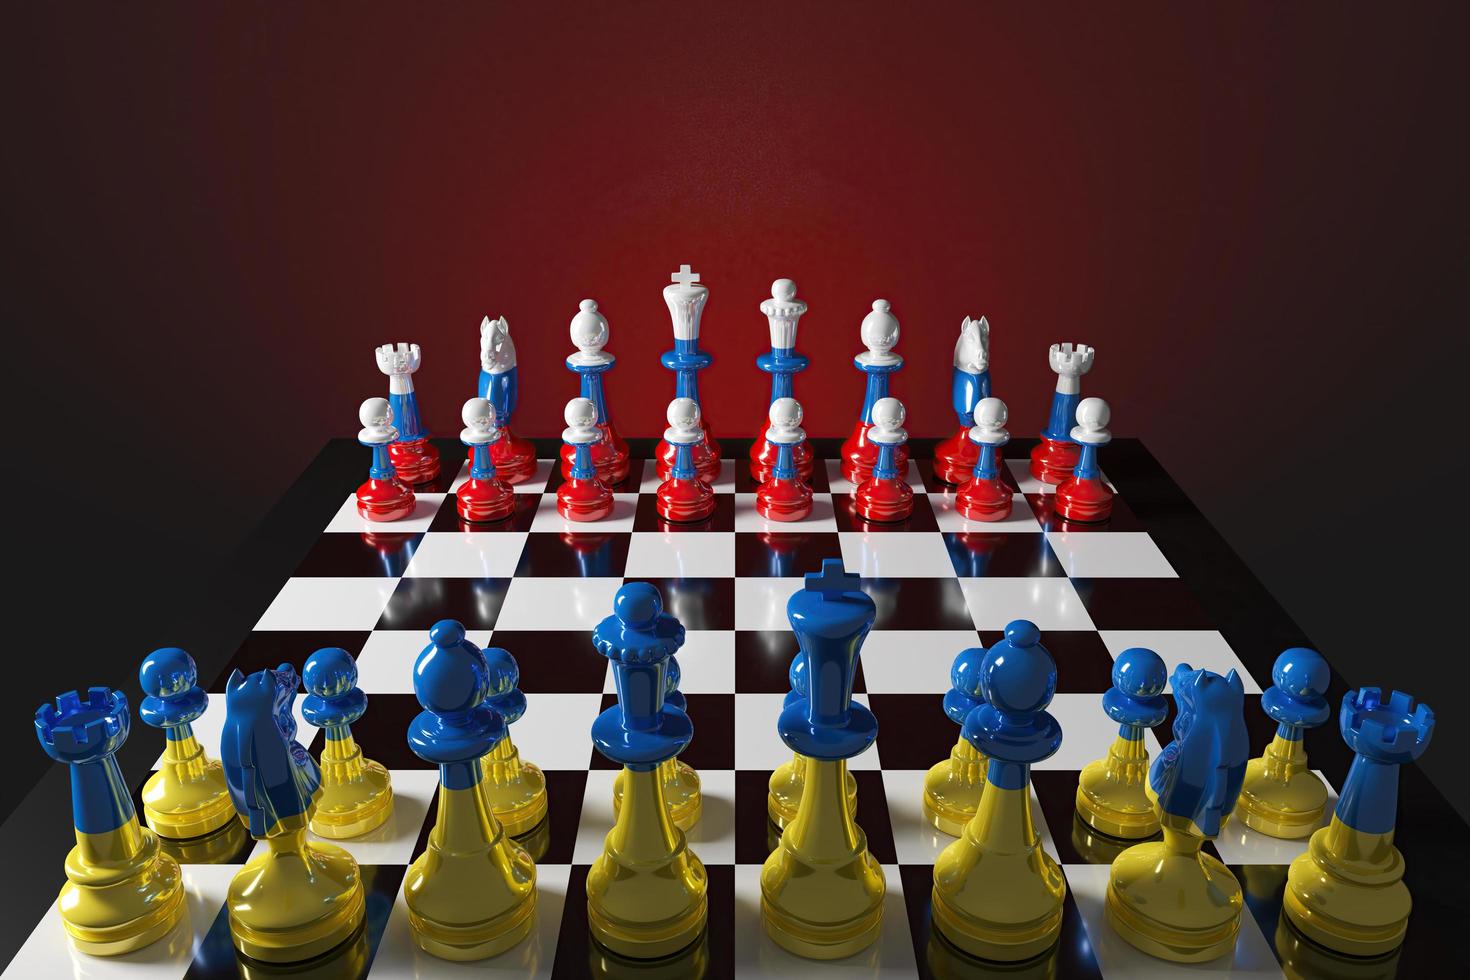 jogo de tabuleiro de xadrez as peças são coloridas com desenhos ucranianos e russos, refletindo o jogo político internacional. renderização em 3D foto